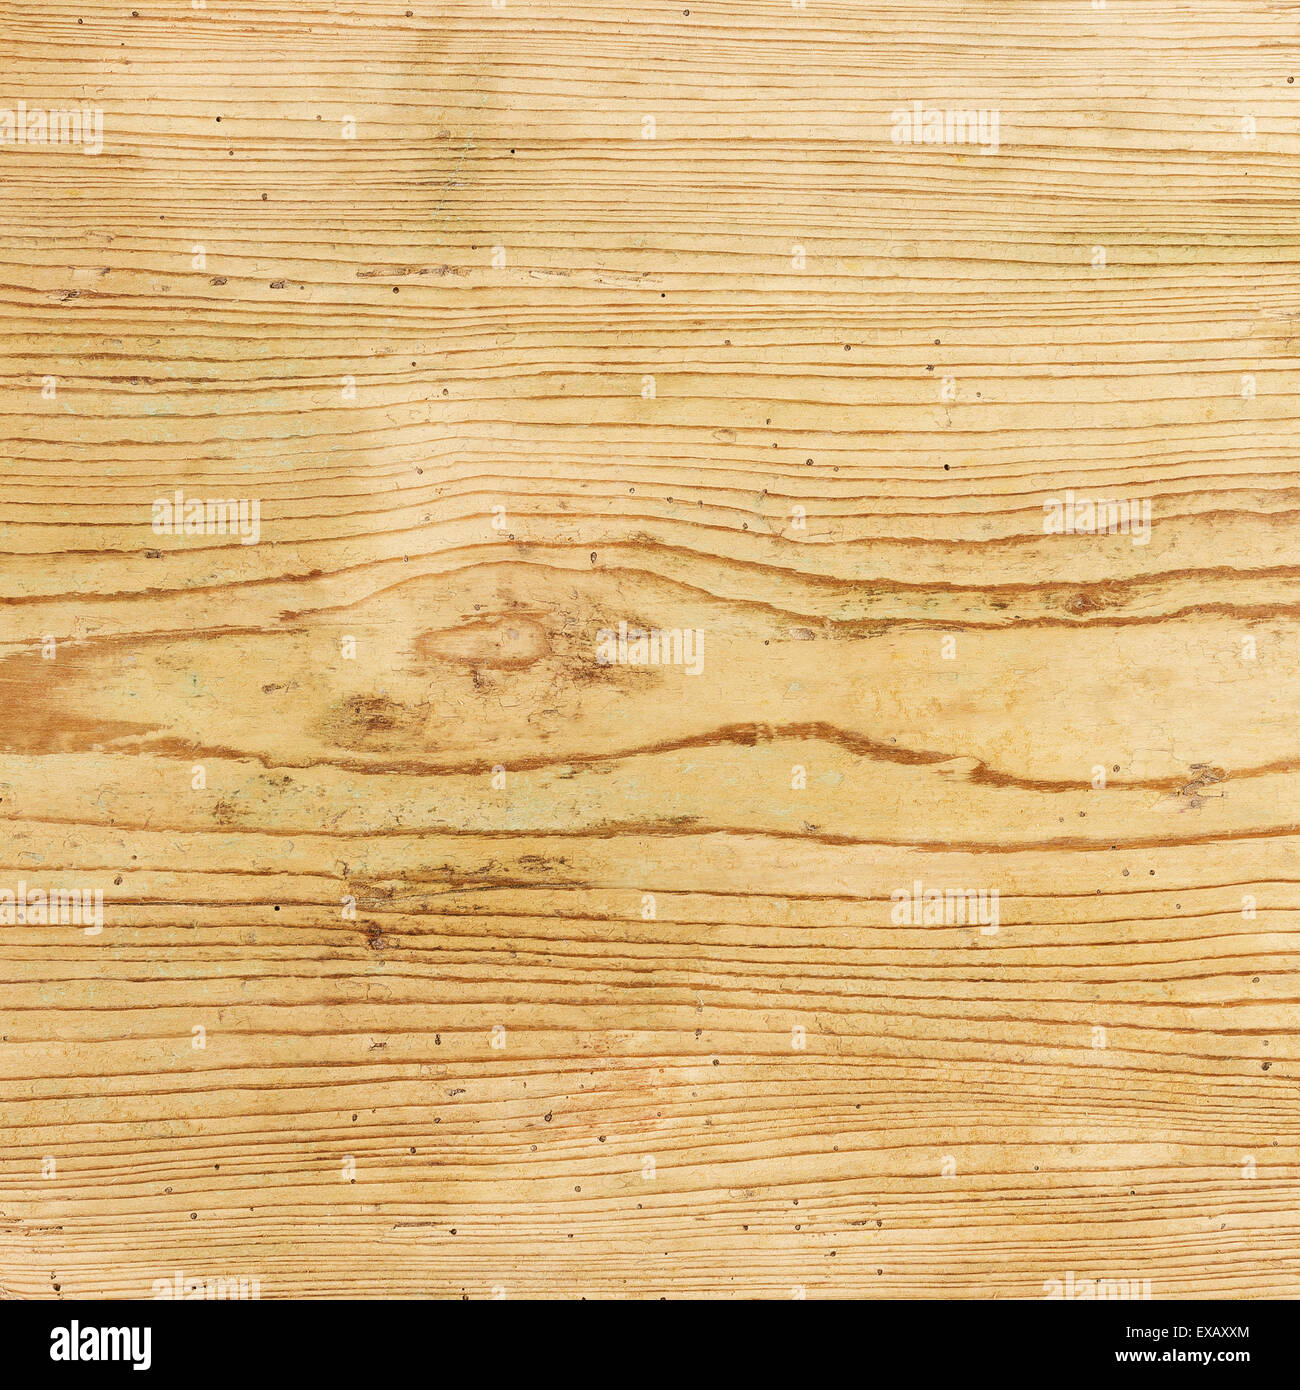 Vieux Chêne bois board du xvie siècle avec de nombreux trous de vers. Banque D'Images